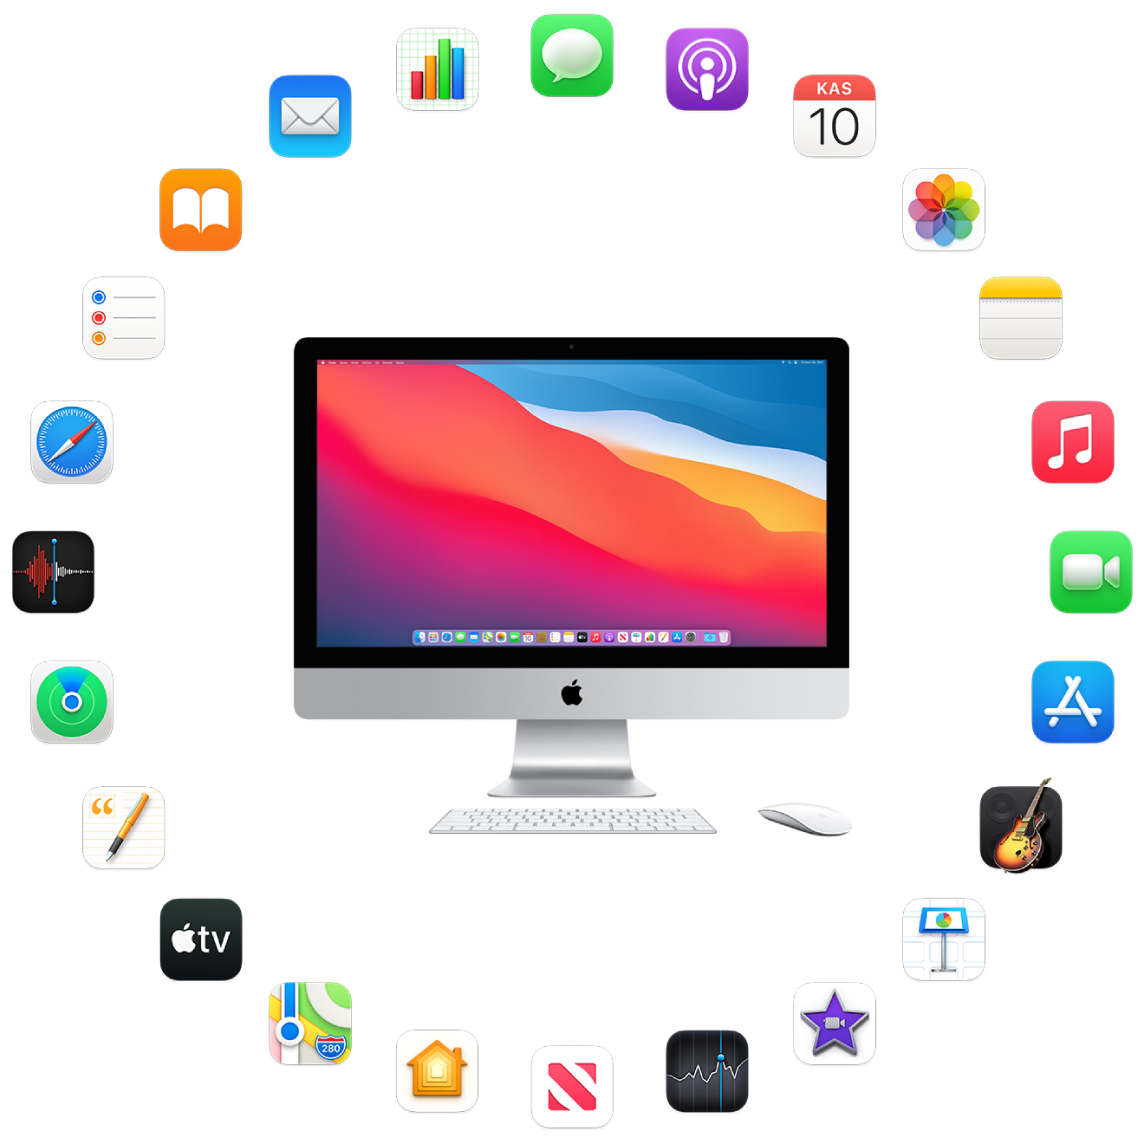 Aşağıdaki bölümlerde açıklanan yerleşik uygulamaların simgeleriyle çevrili bir iMac.